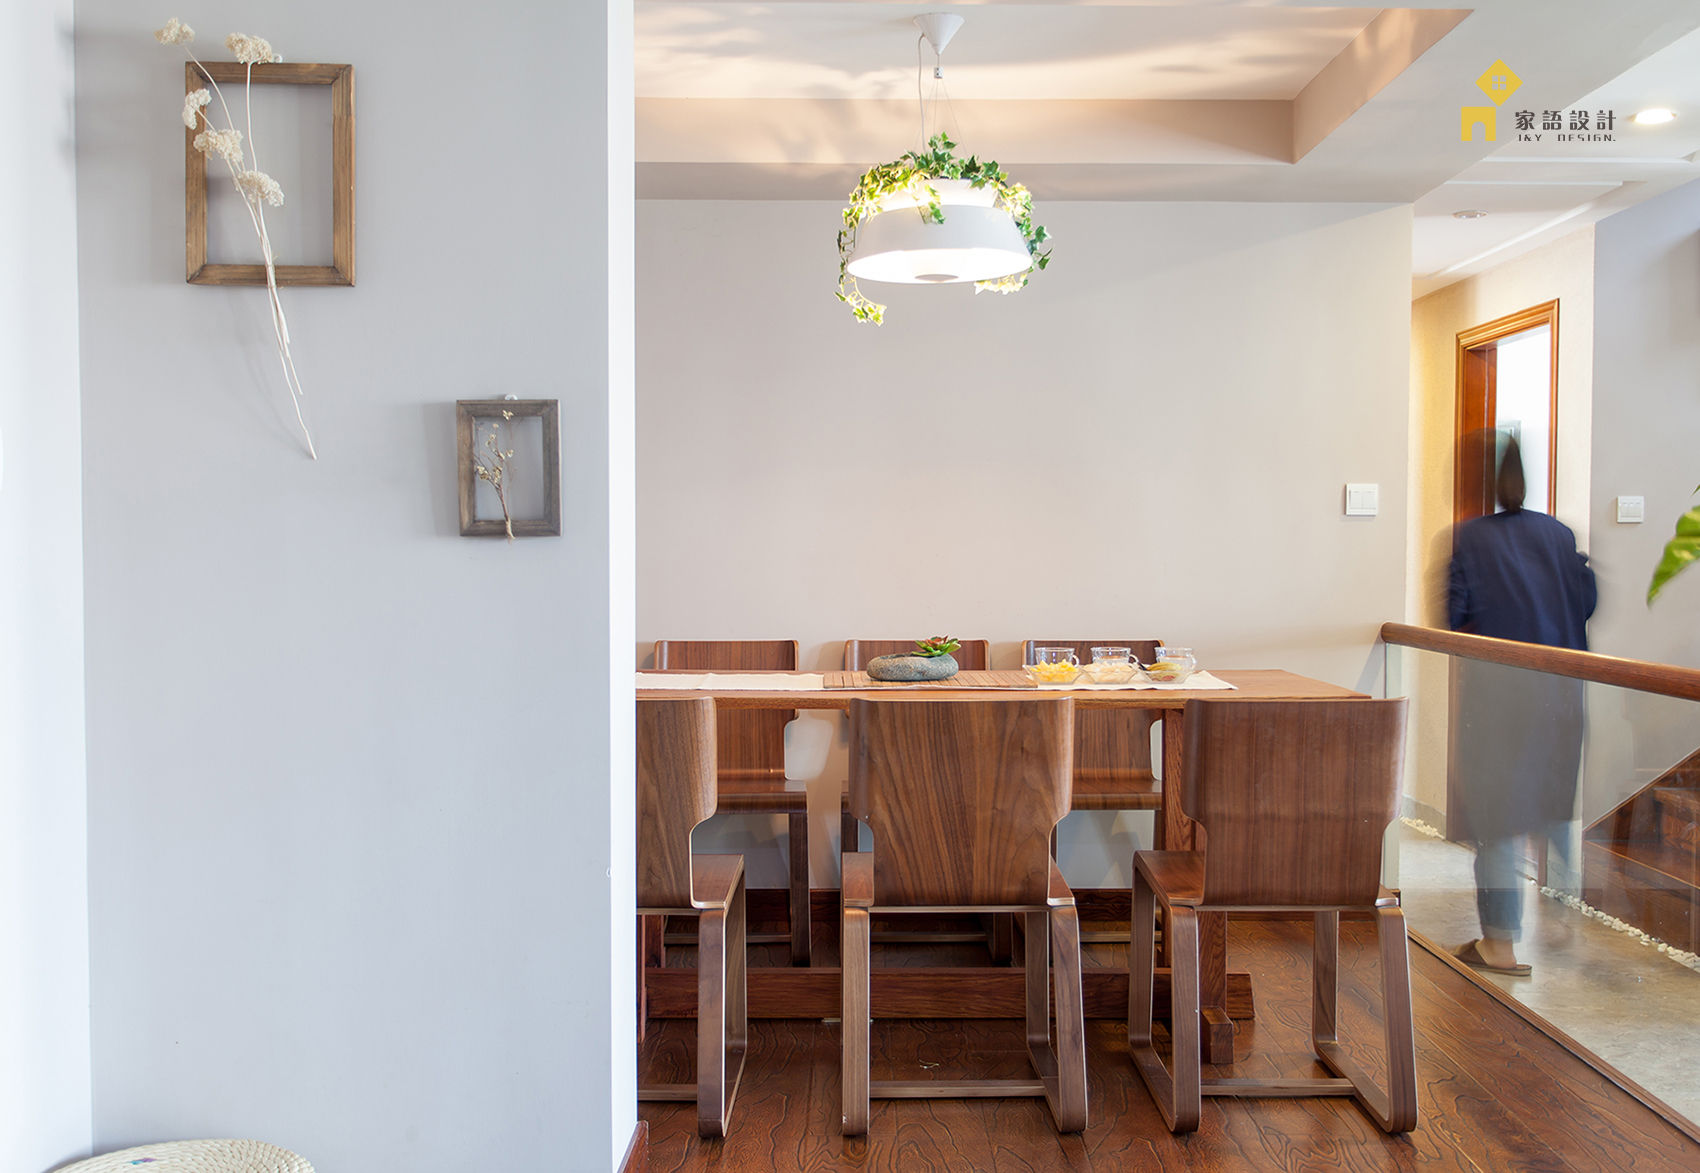 混搭 日式 复式 收纳 餐厅图片来自jiayu在心素如简的分享